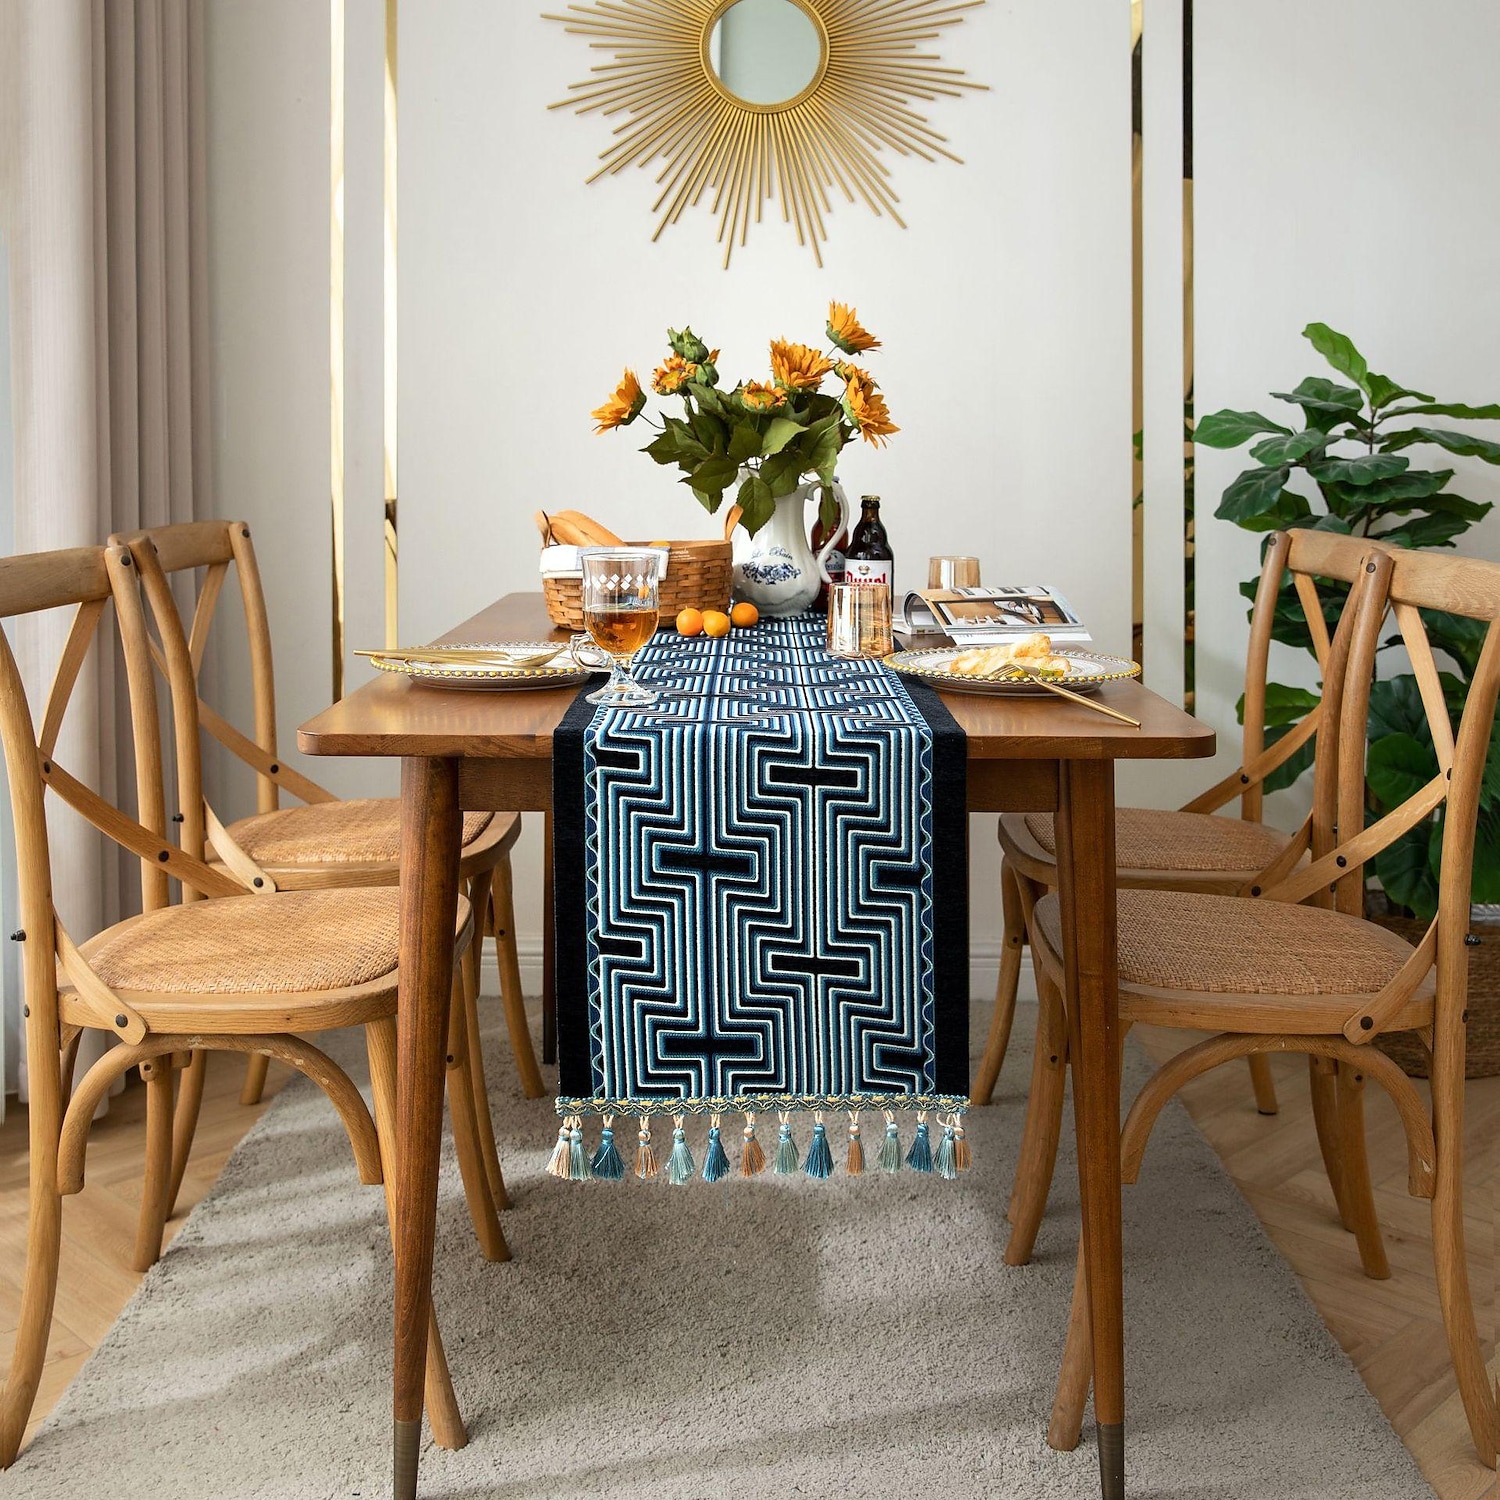 Table Runner Cotton Linen Farmhouse Style Table Decor Cover